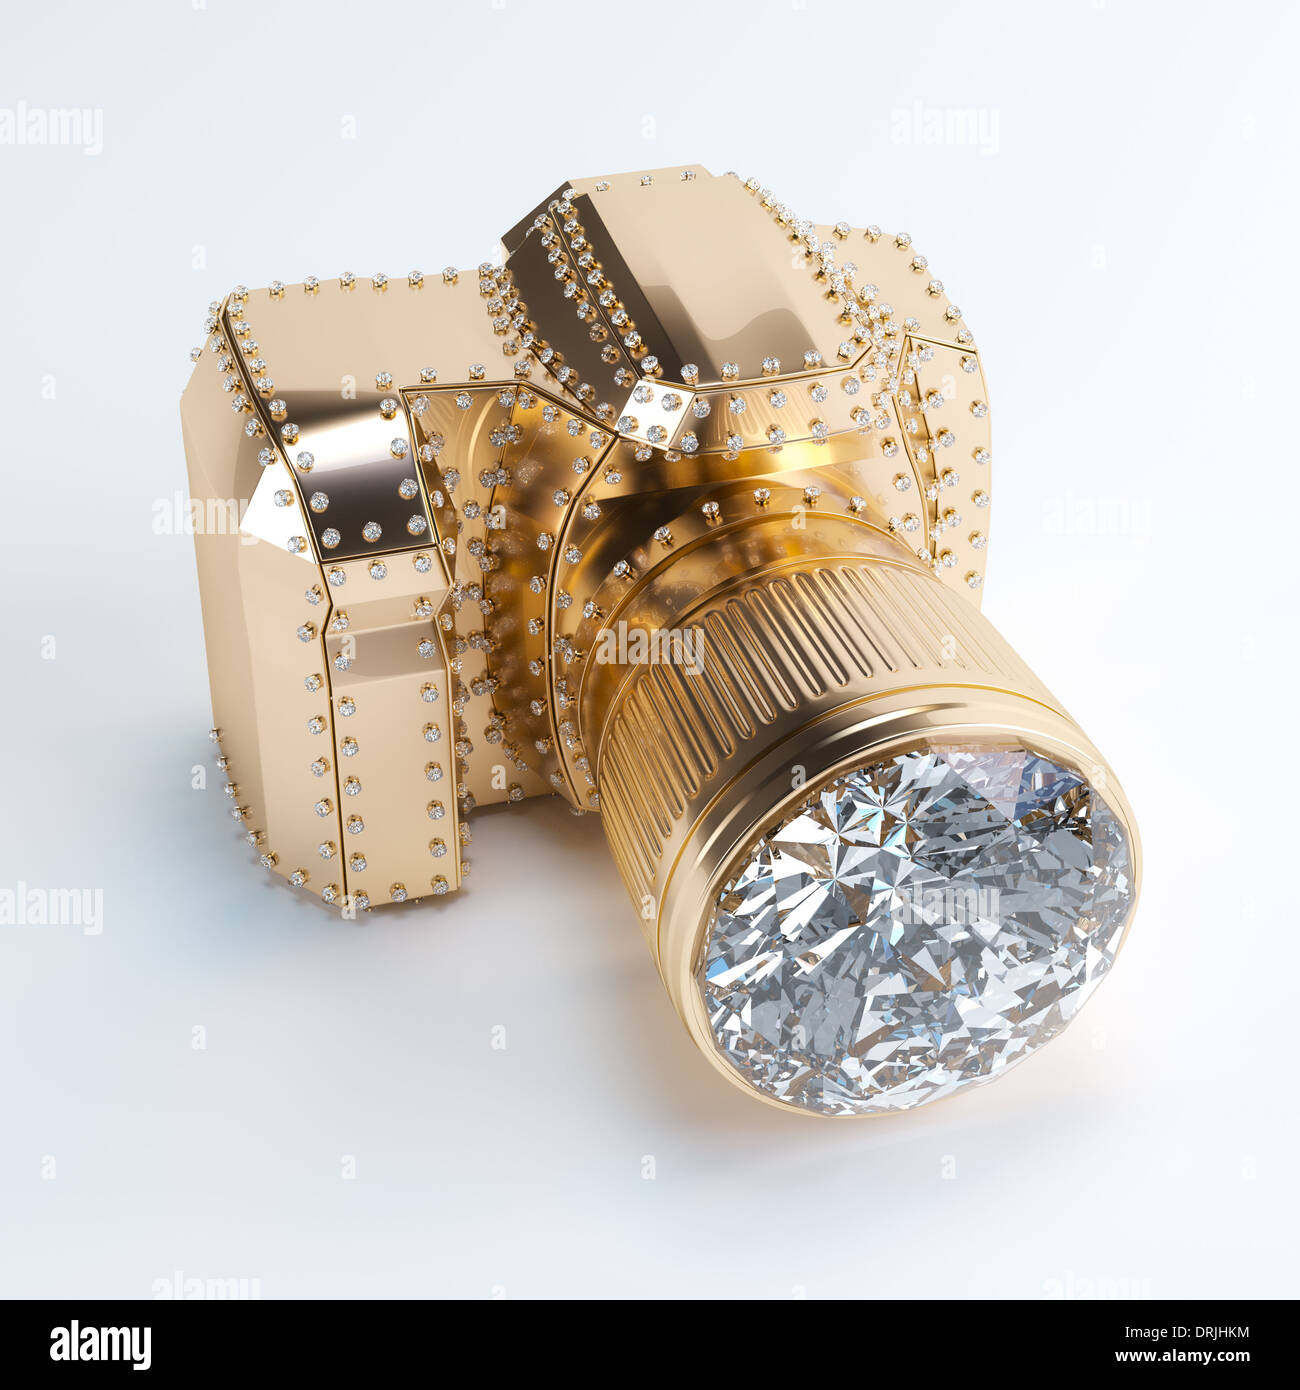 Goldene Kamera mit Diamant-Objektiv Stockfoto